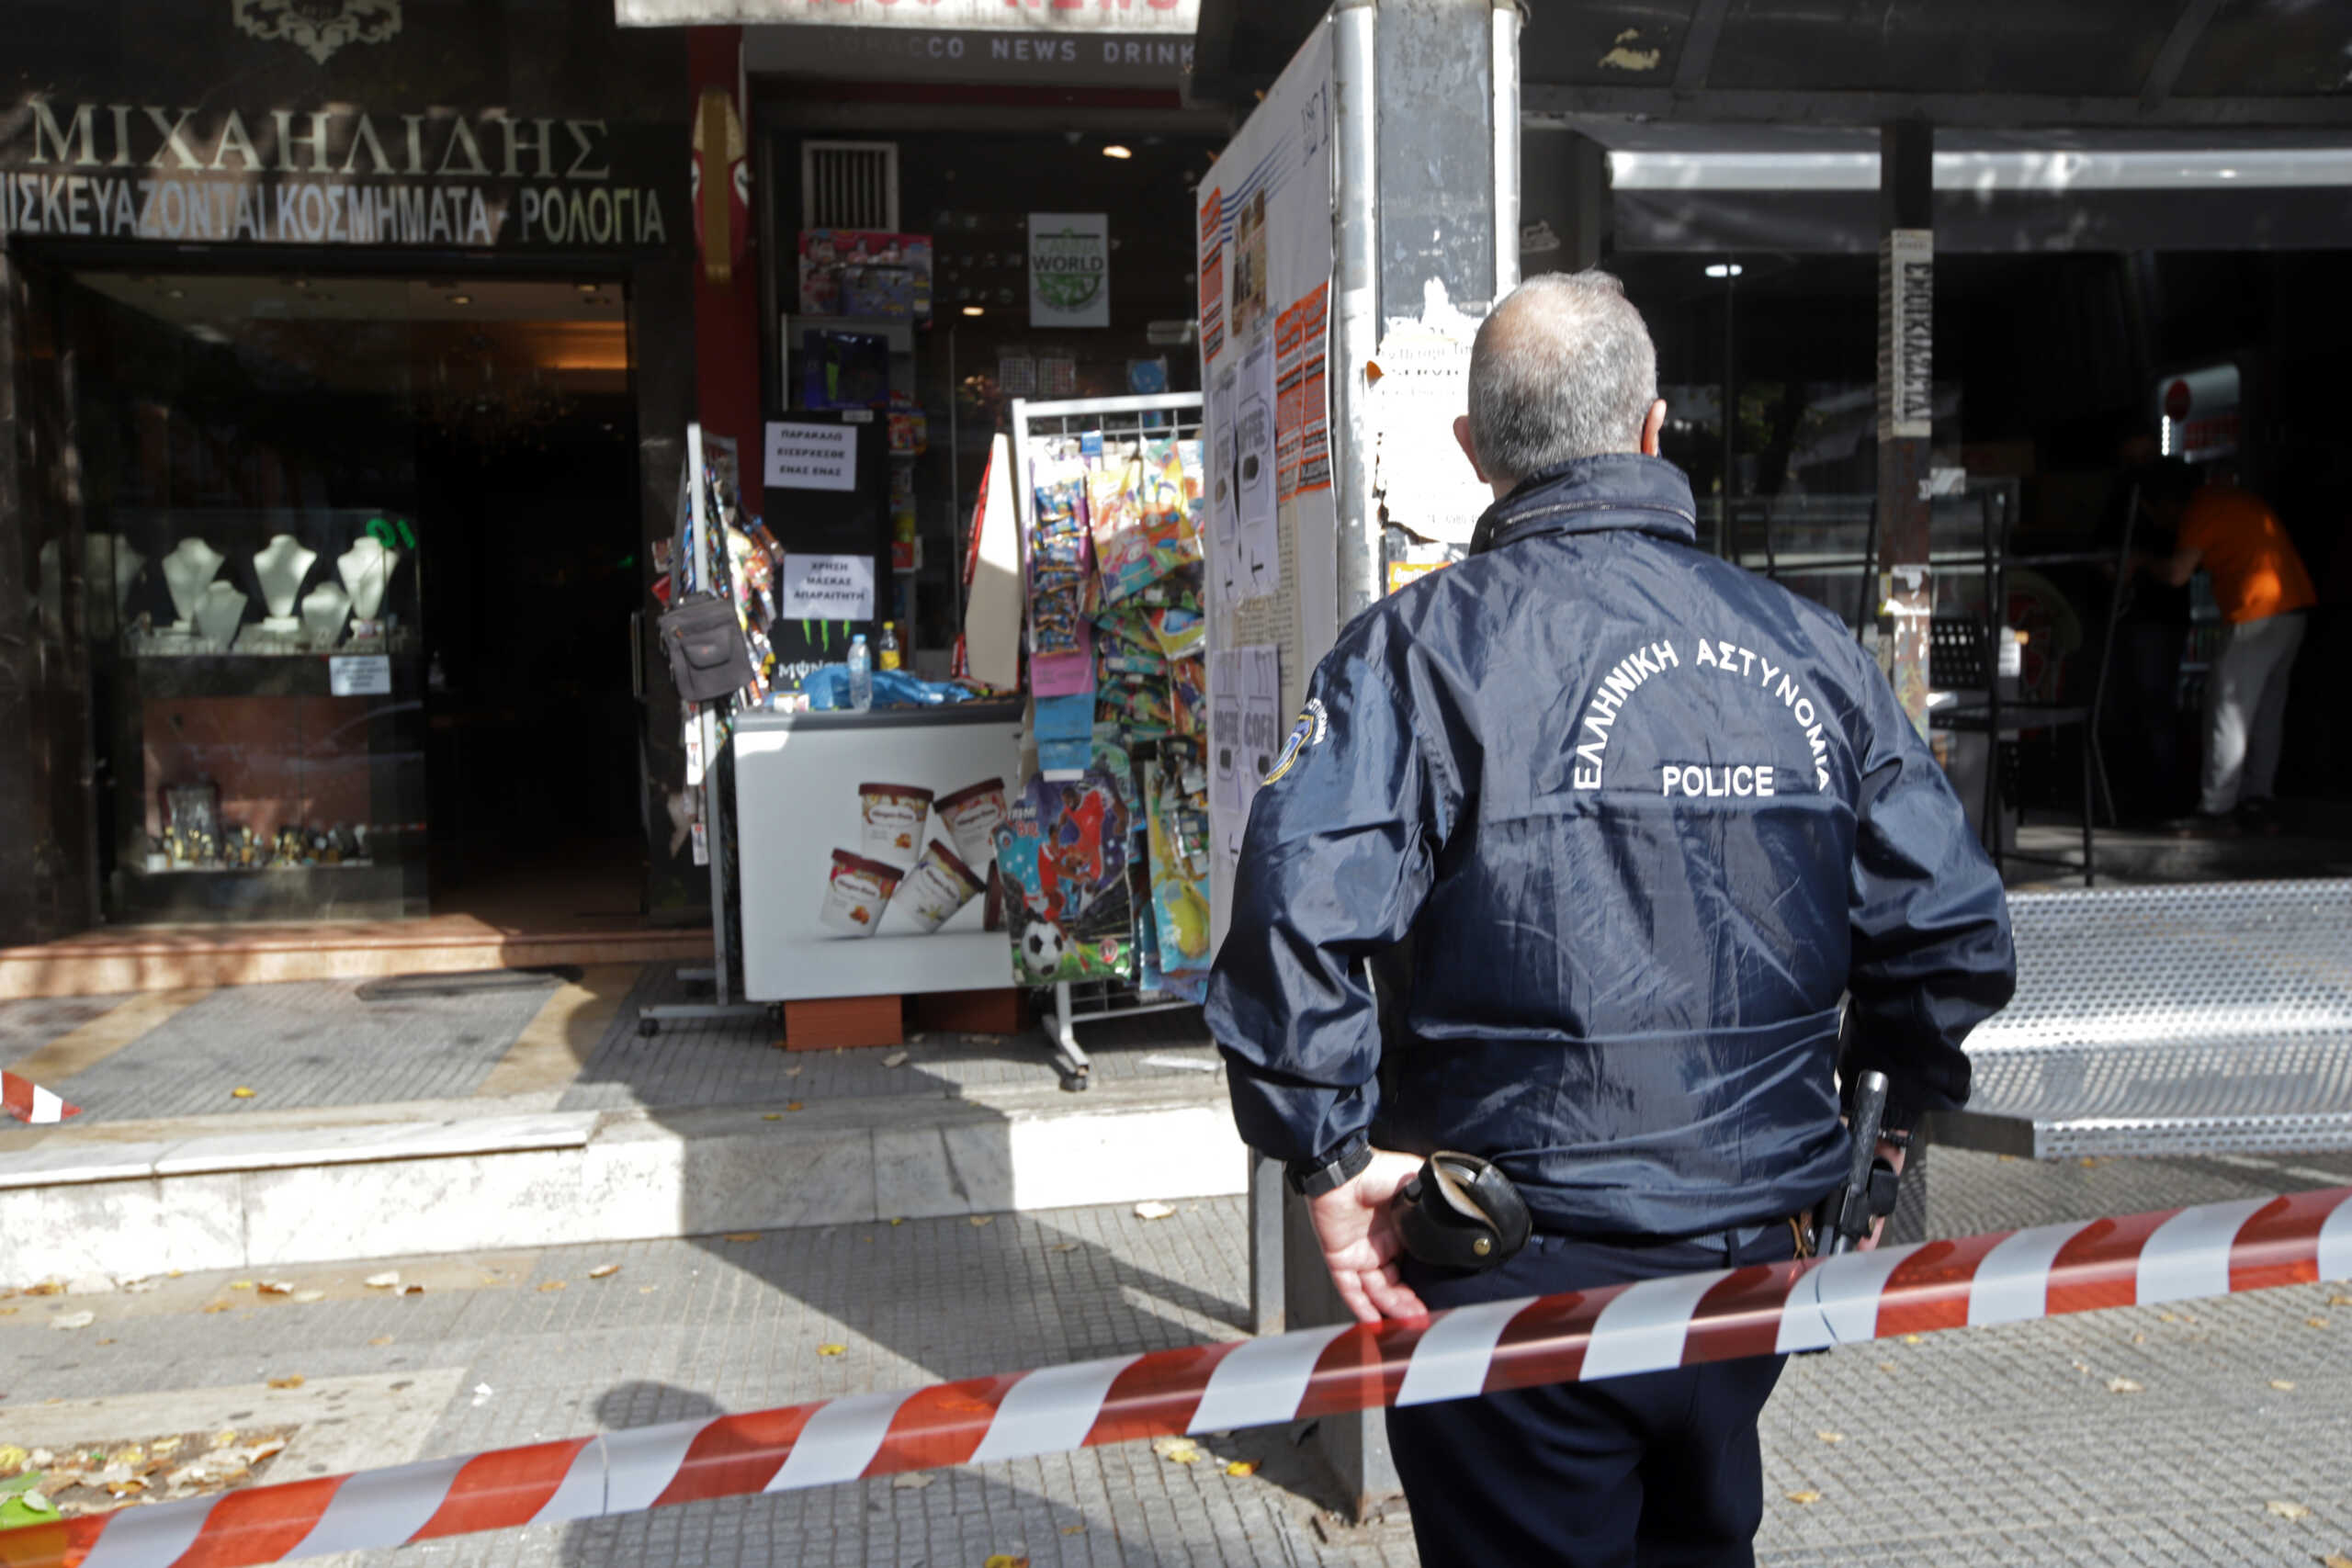 Θεσσαλονίκη: Ληστεία σε ψιλικατζίδικο του Ευόσμου – Έβγαλαν μαχαίρια και άδειασαν το ταμείο